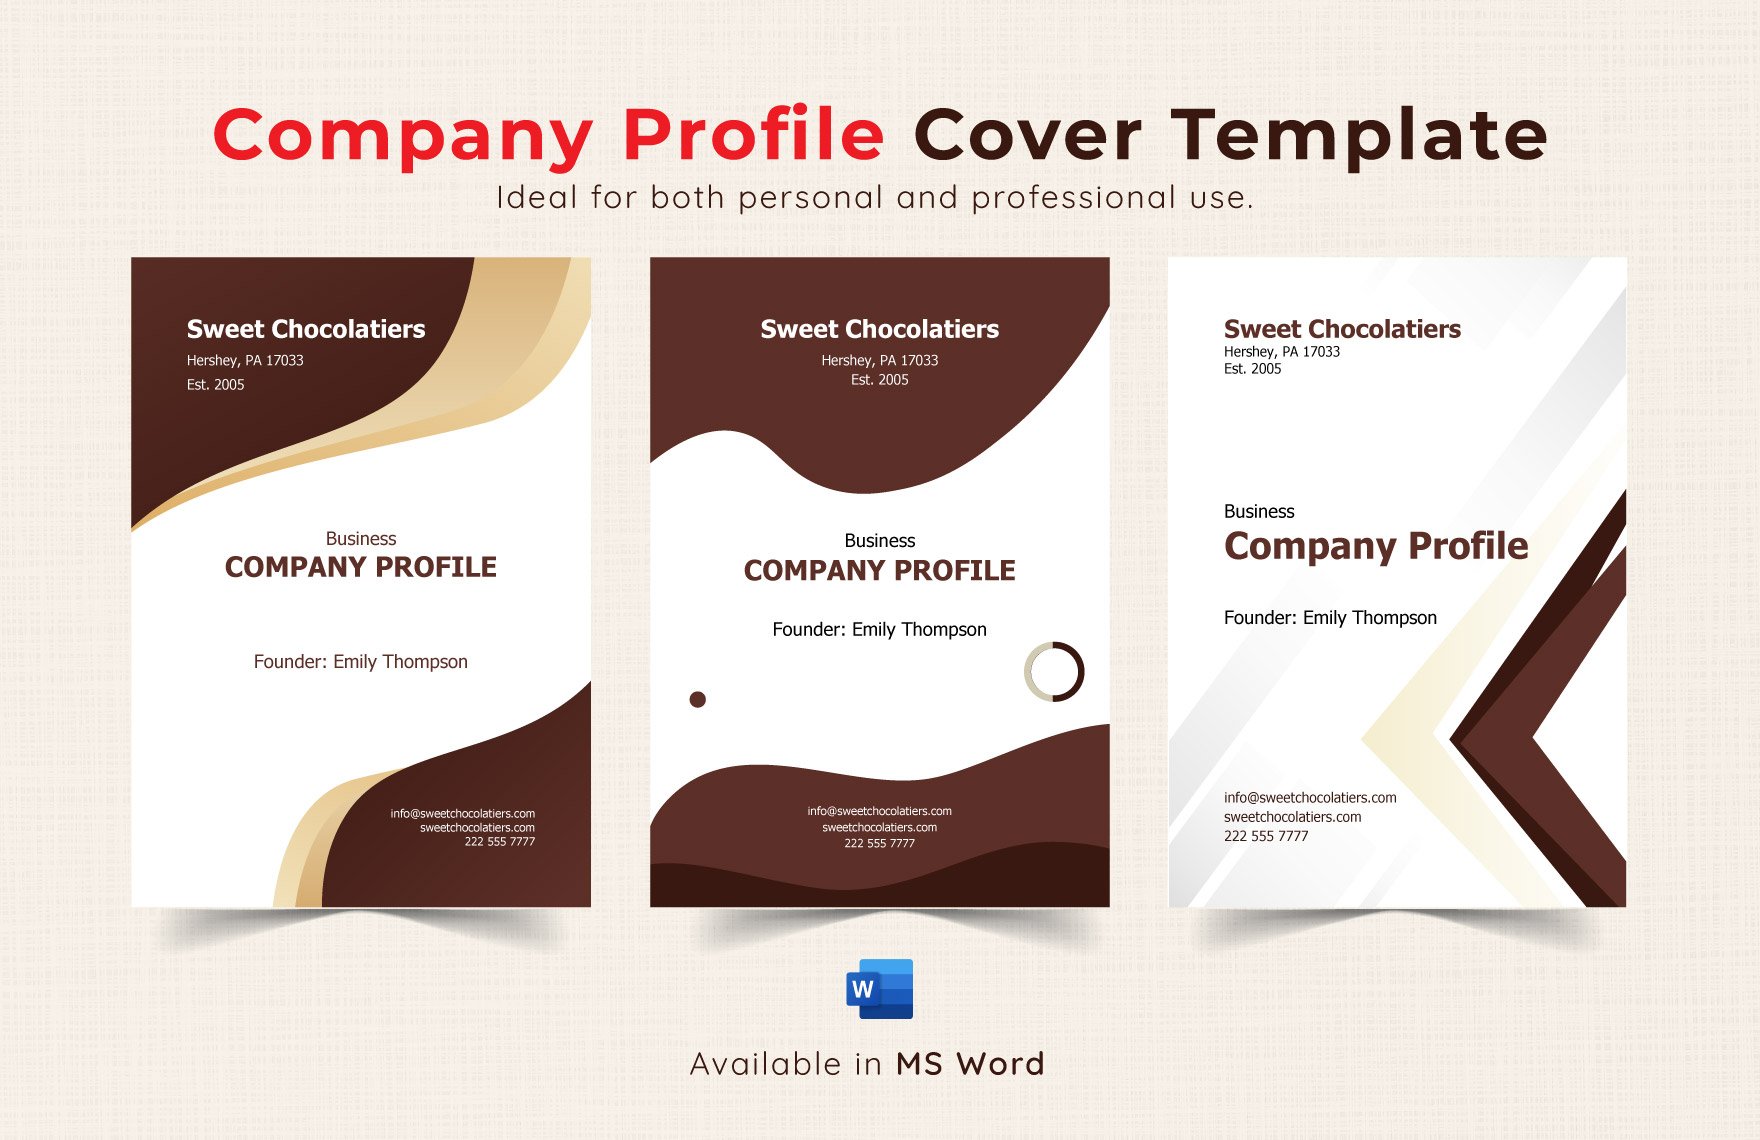 Company Profile Cover Template